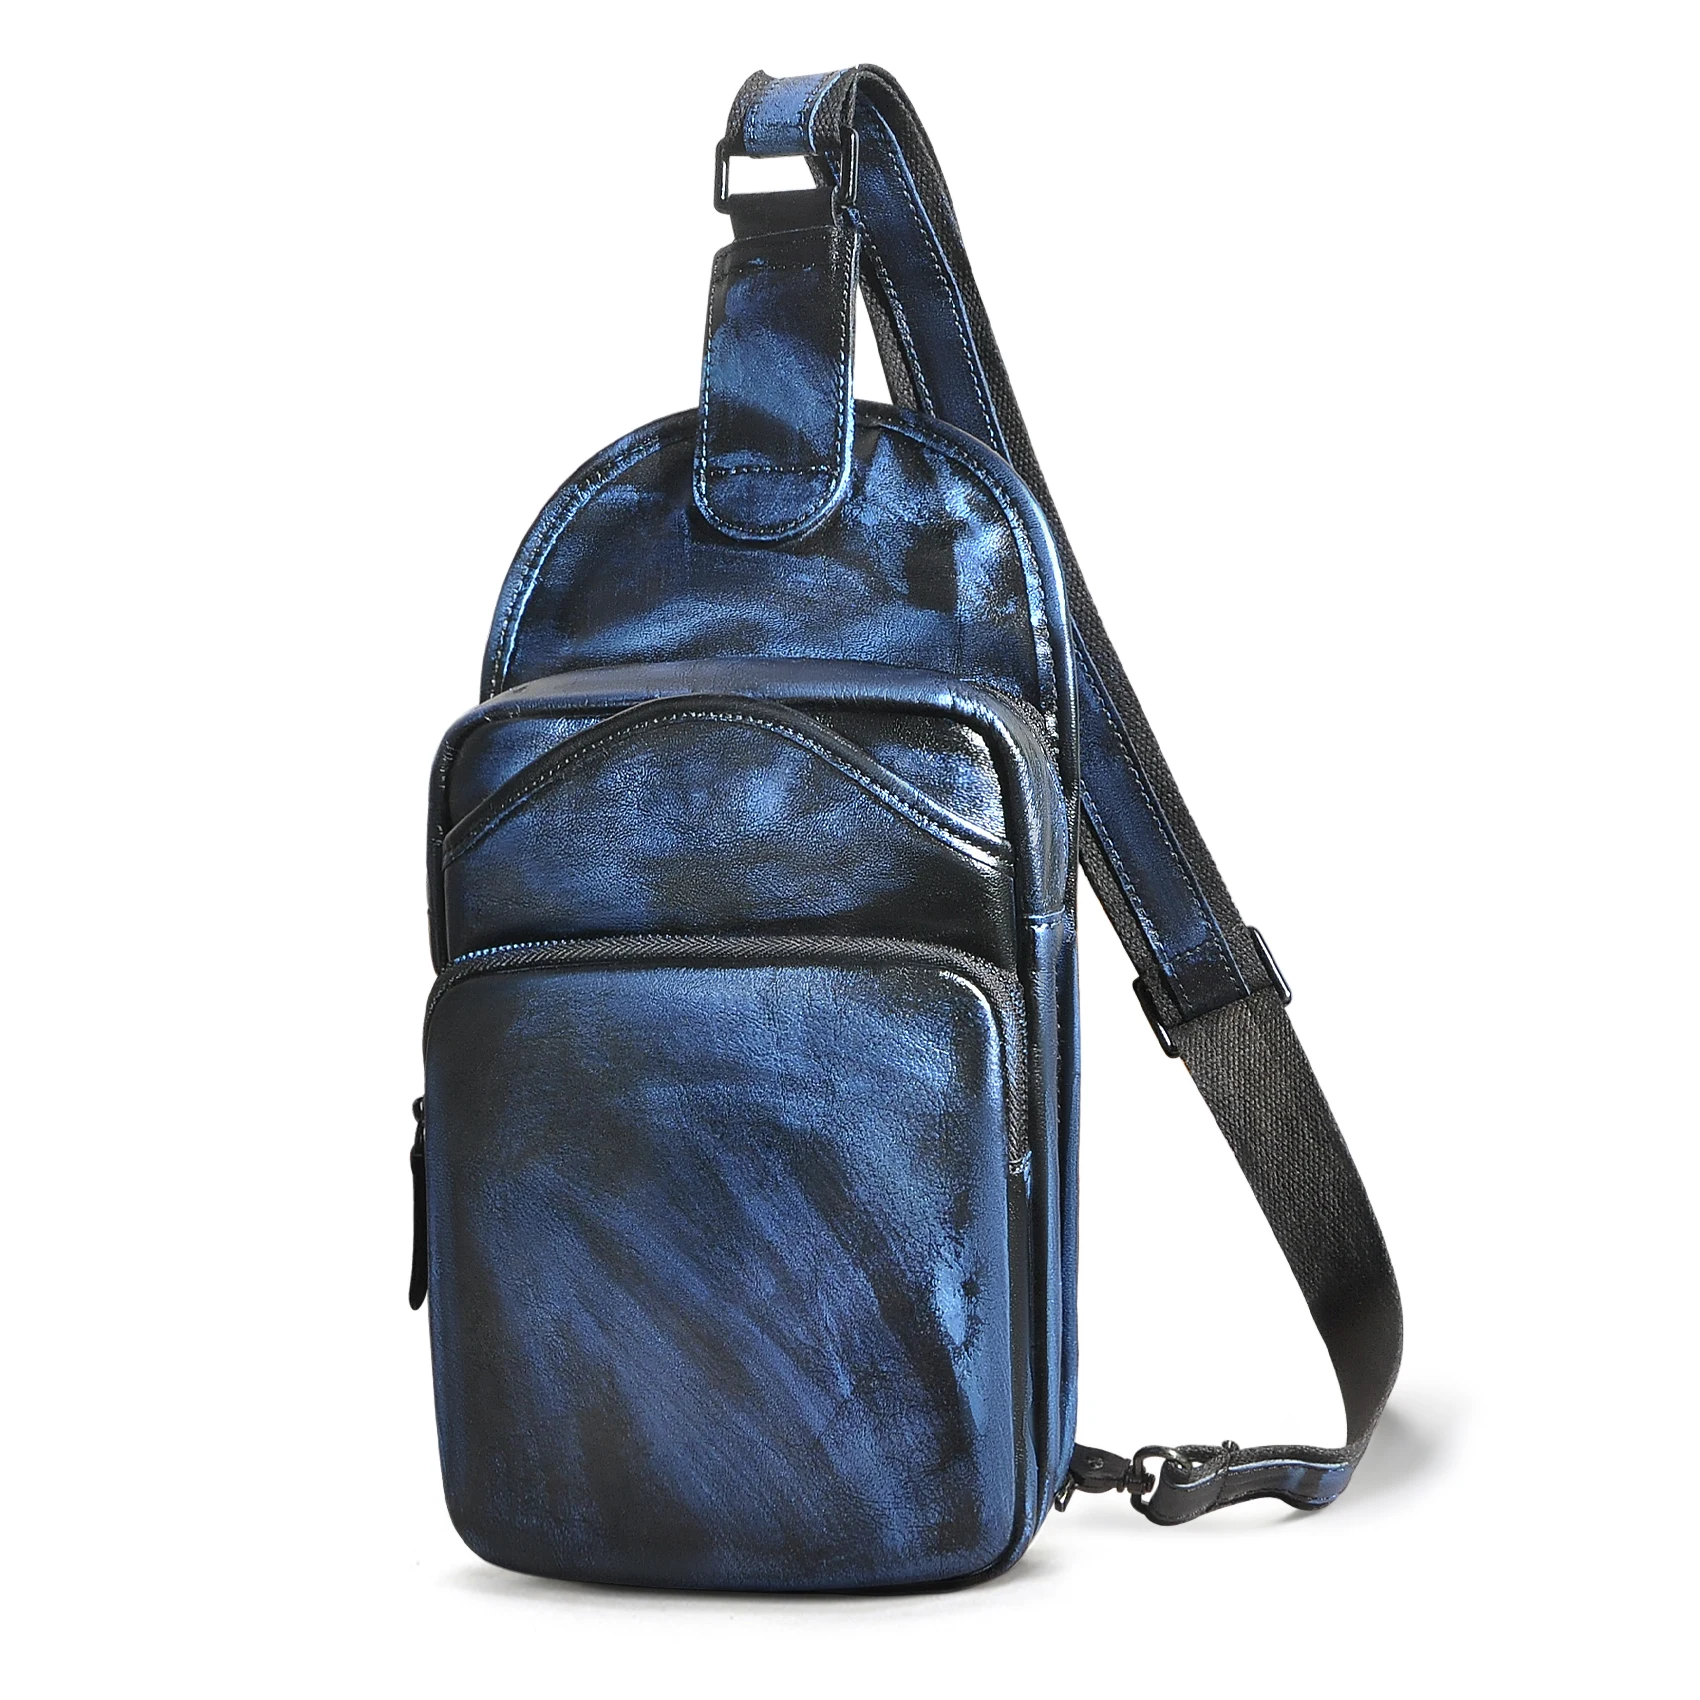 

Le'aokuu Men Crazy Horse Leather Casual Vintage Fashion Blue Chest Sling Bag Design One Shoulder Crossbody Bag For Male 9977